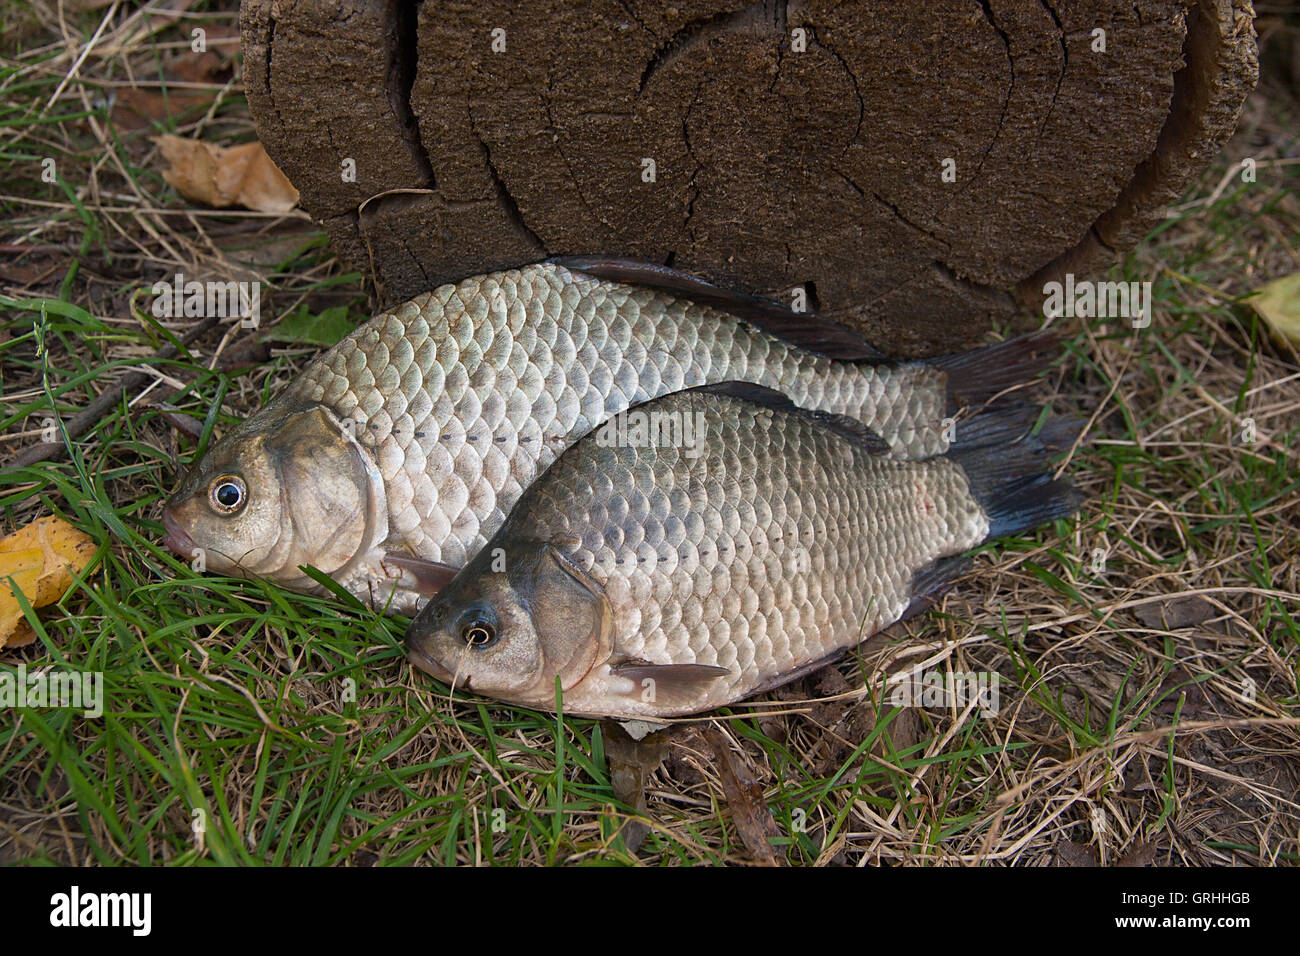 Süßwasserfische, die gerade aus dem Wasser genommen werden. Karausche Fisch oder Carassius auf dem grünen Rasen. Stockfoto